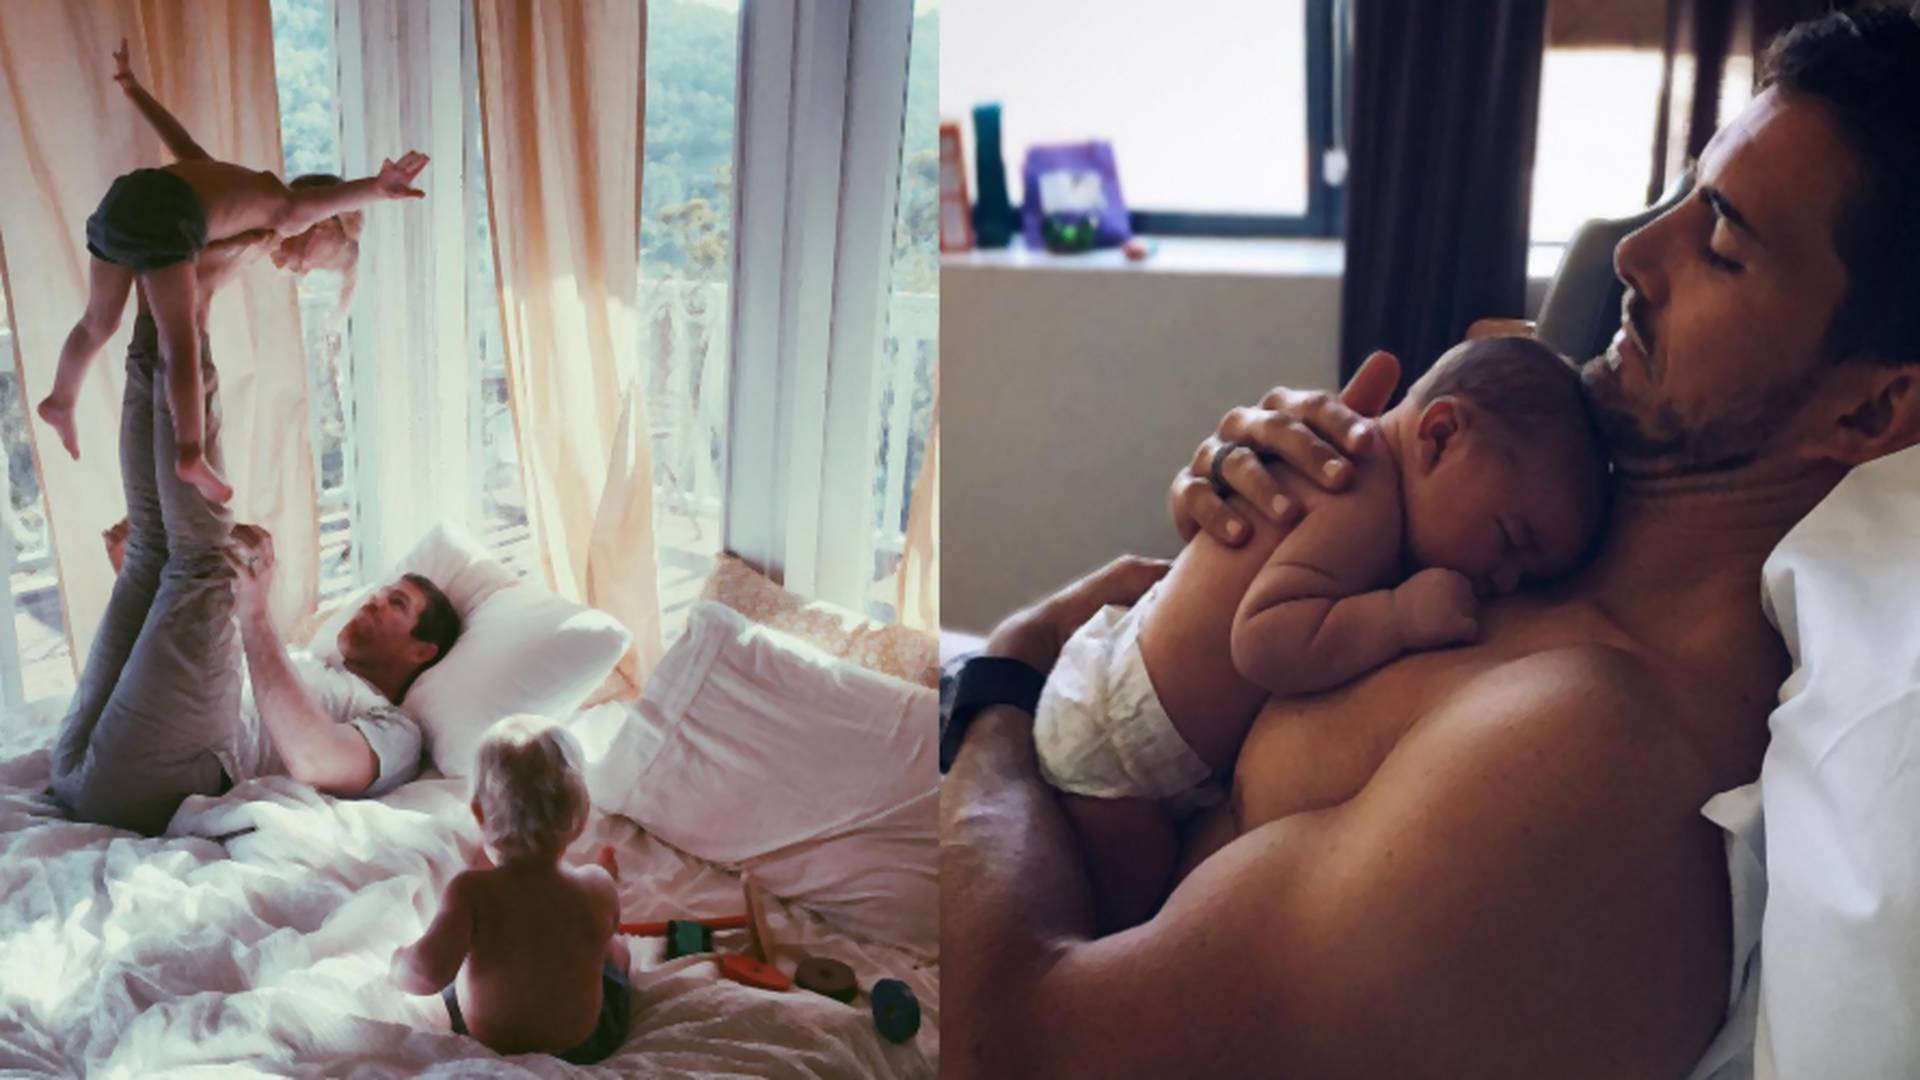 Grupa tatusiów na Instagramie pokazuje, że opieka nad dzieckiem to nie tylko "babska sprawa"